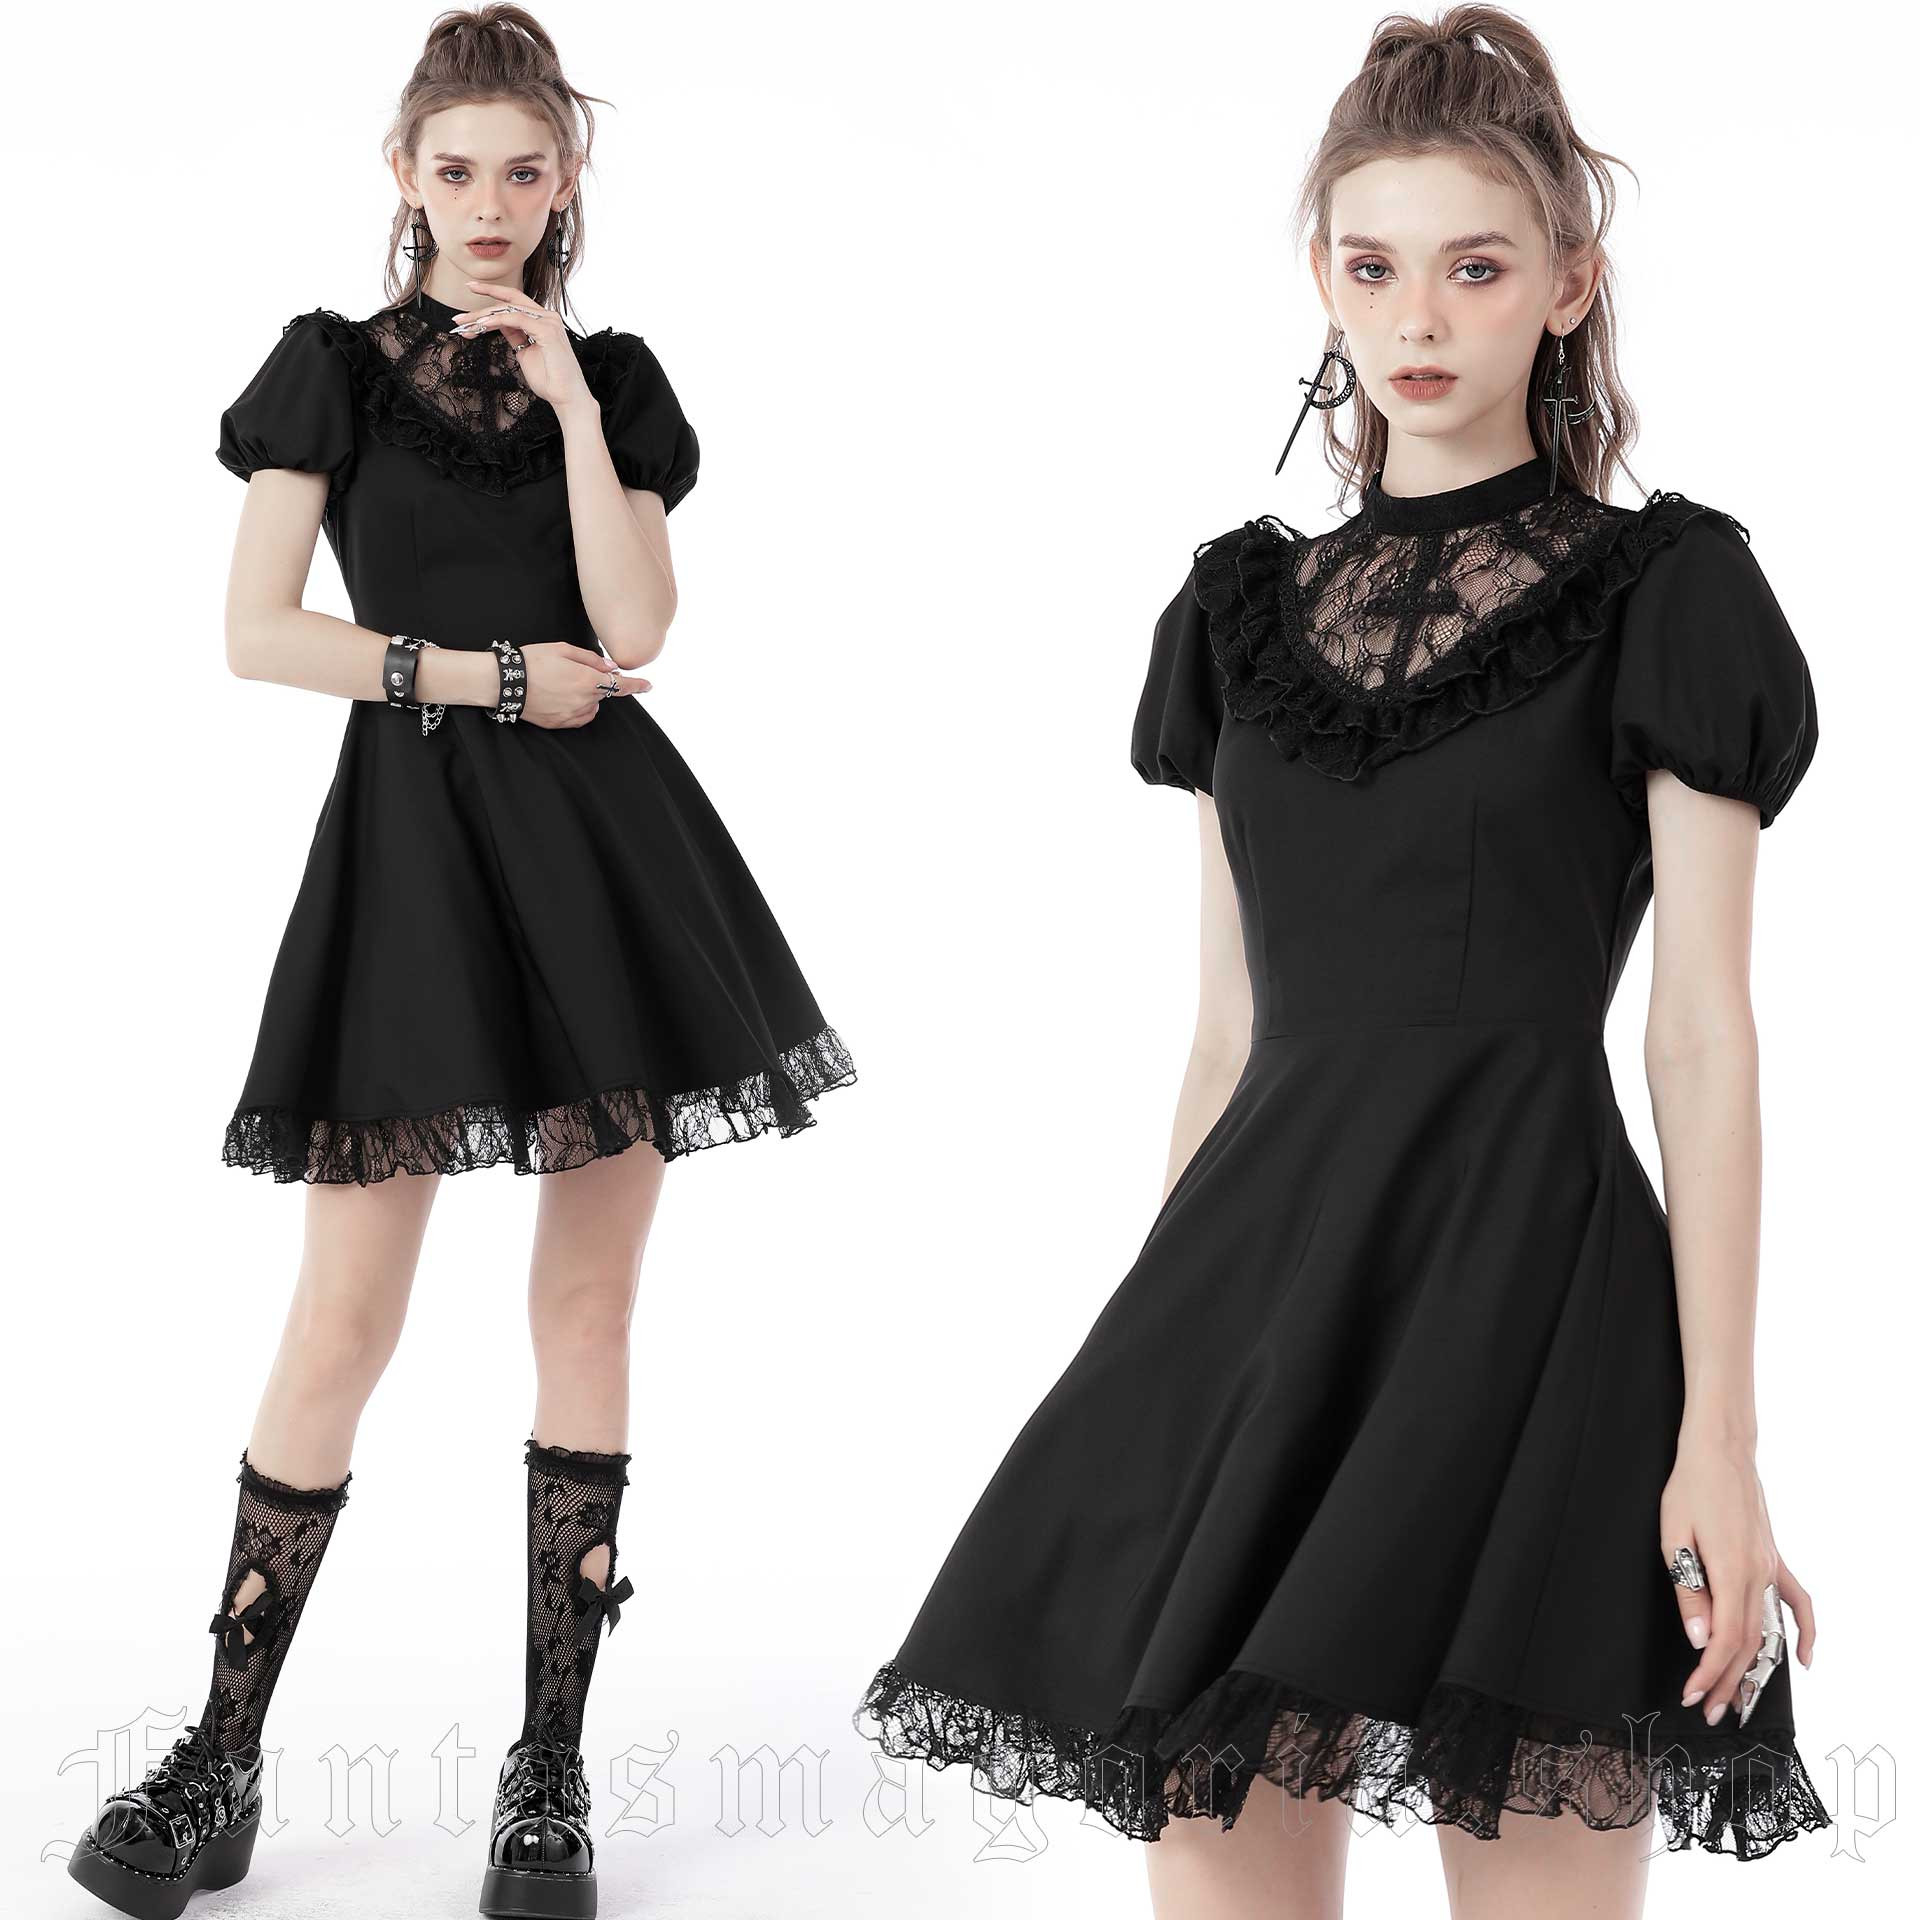 Black Goth Clothing, Dark Goth Clothing